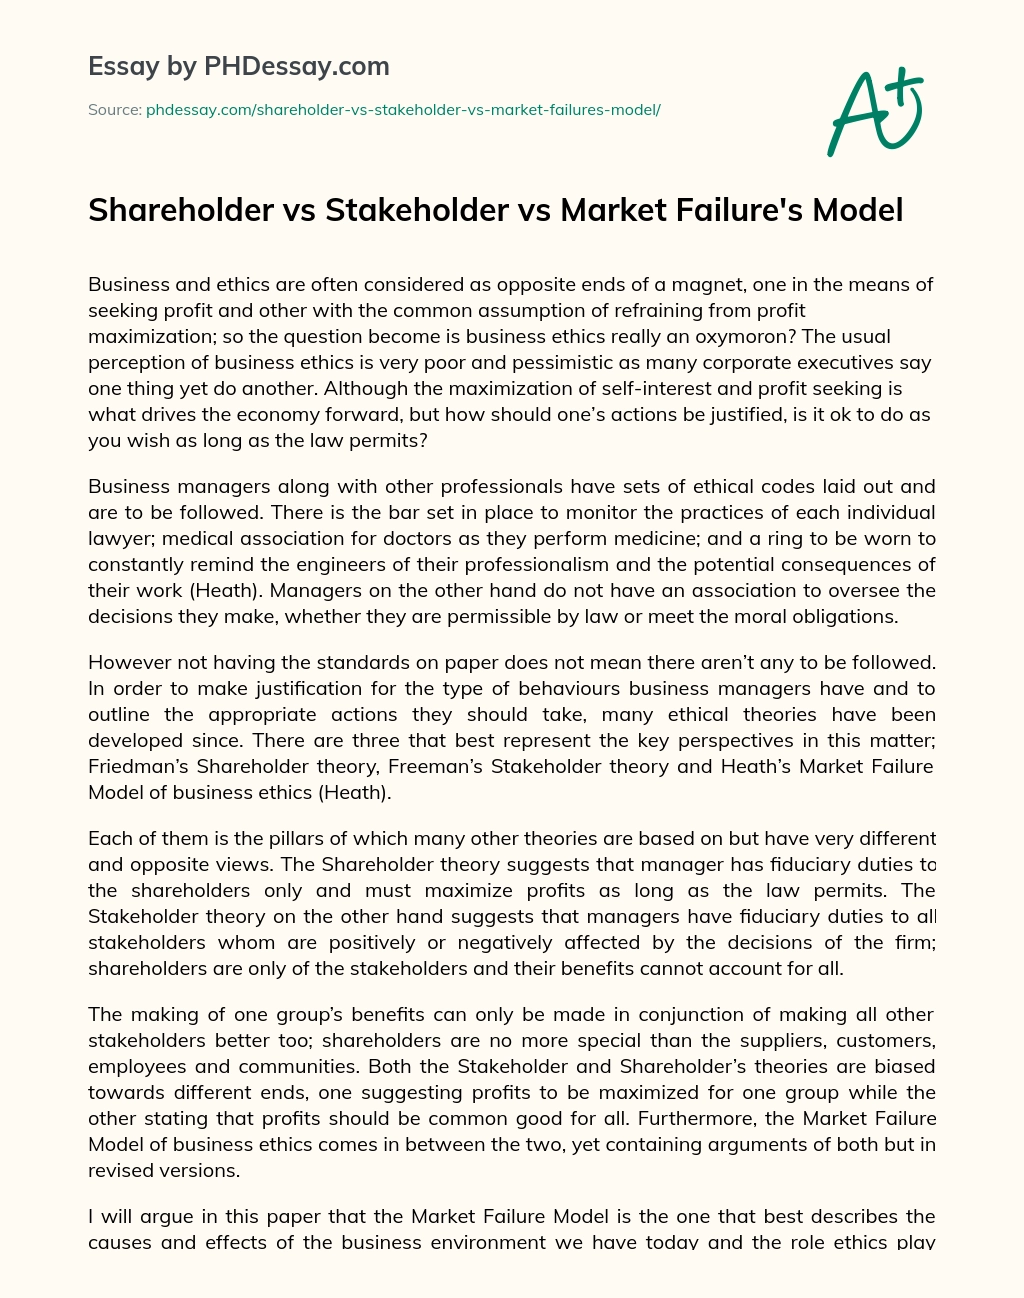 Shareholder vs Stakeholder vs Market Failure’s Model essay